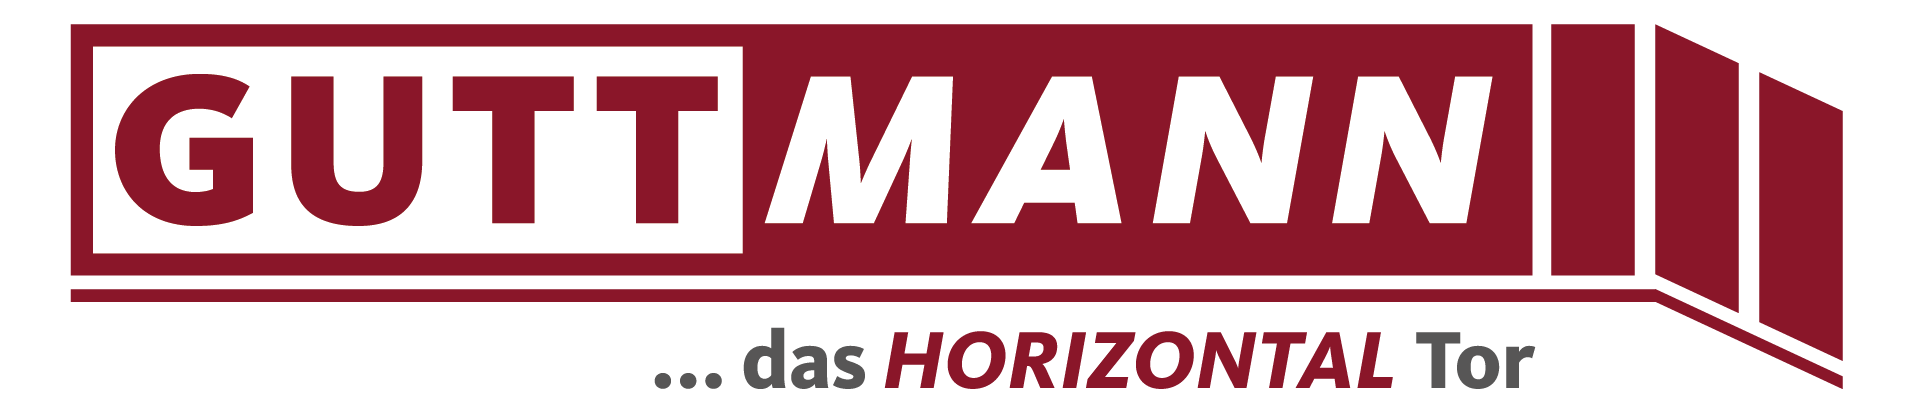 Webschmiede Referenz - Guttmann Tore - Logo